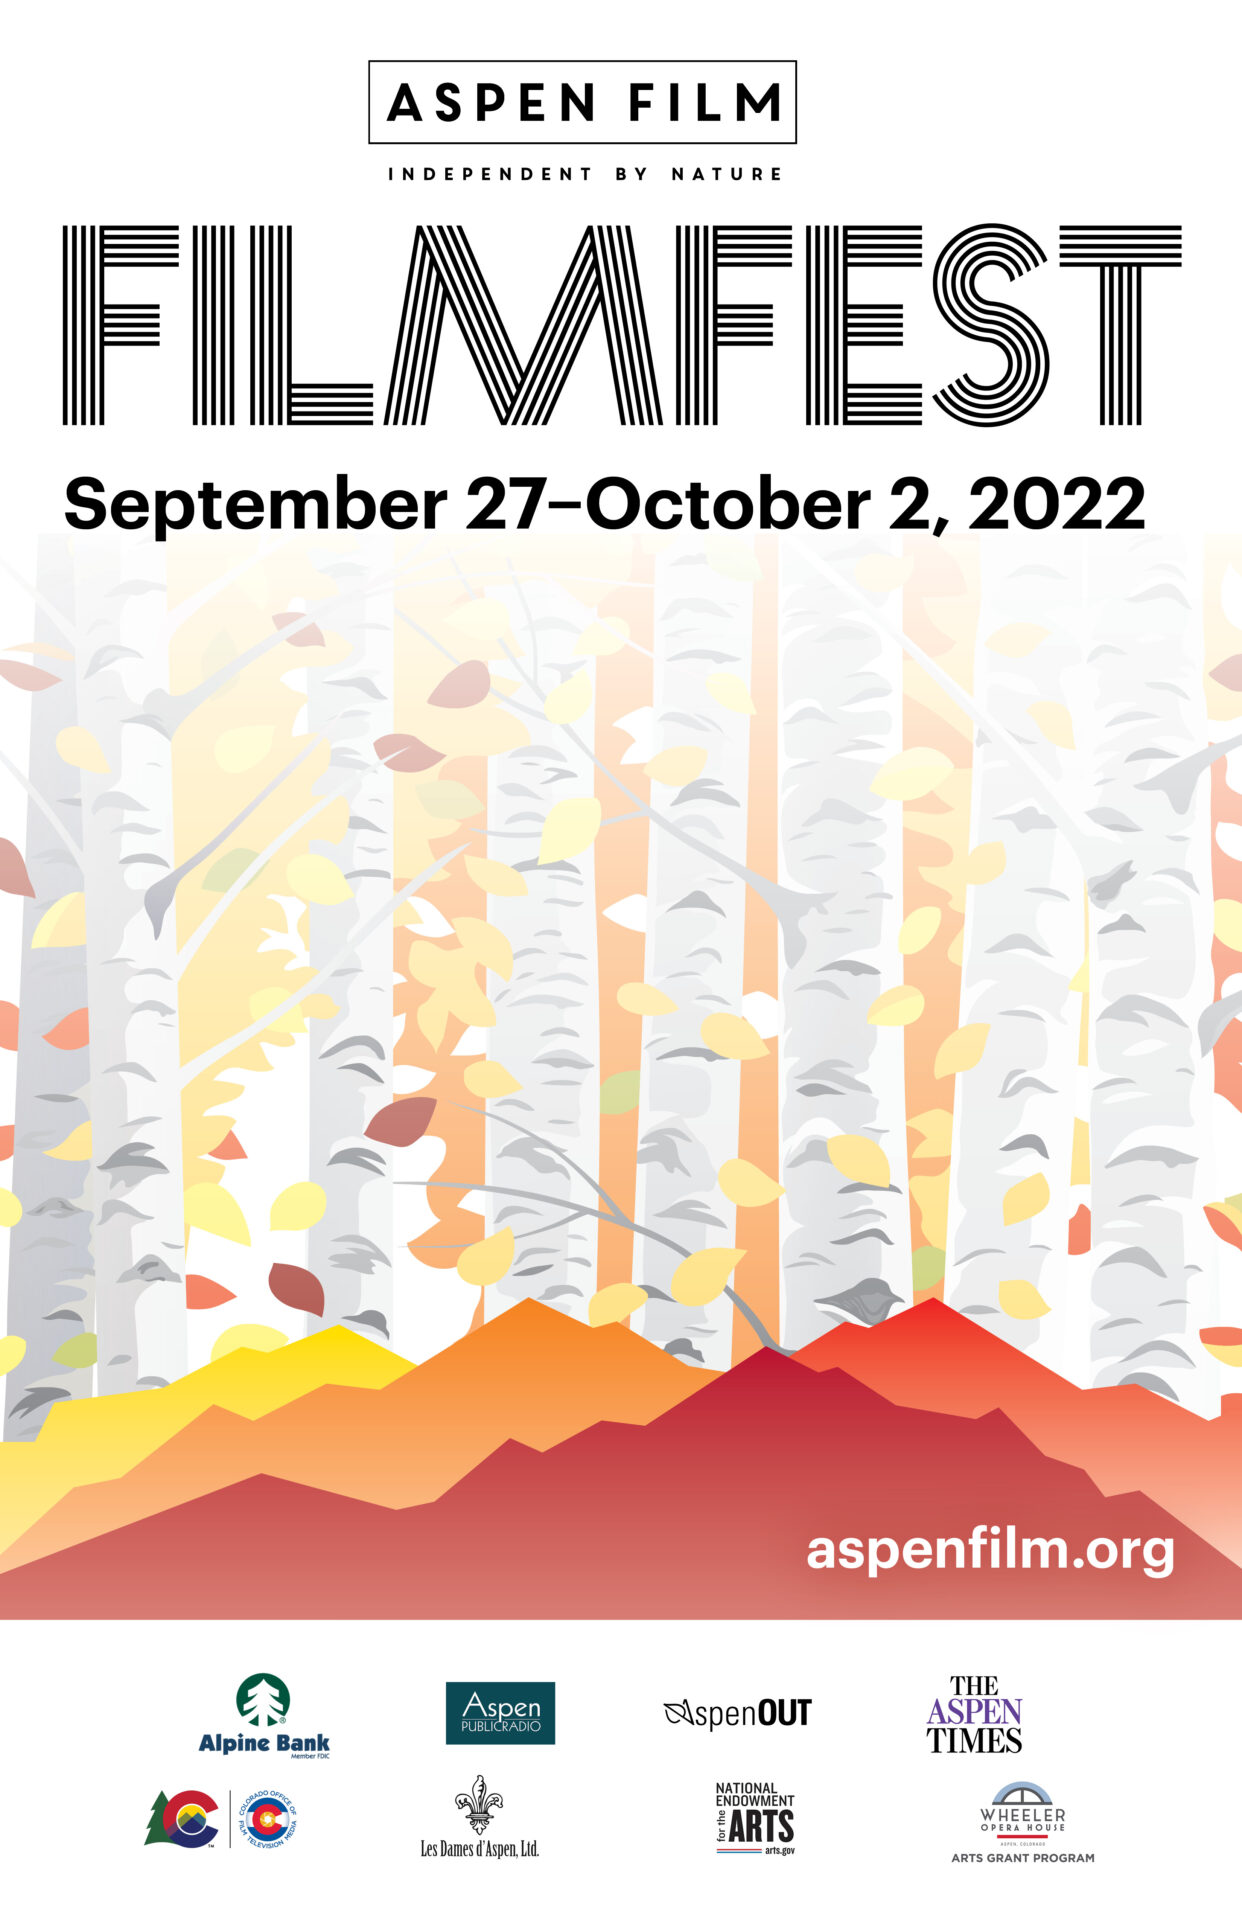 A SEPTEMBER TO REMEMBER IN FILM: ASPEN FILM ANNOUNCES PROGRAM FOR 43rd ANNUAL FILMFEST